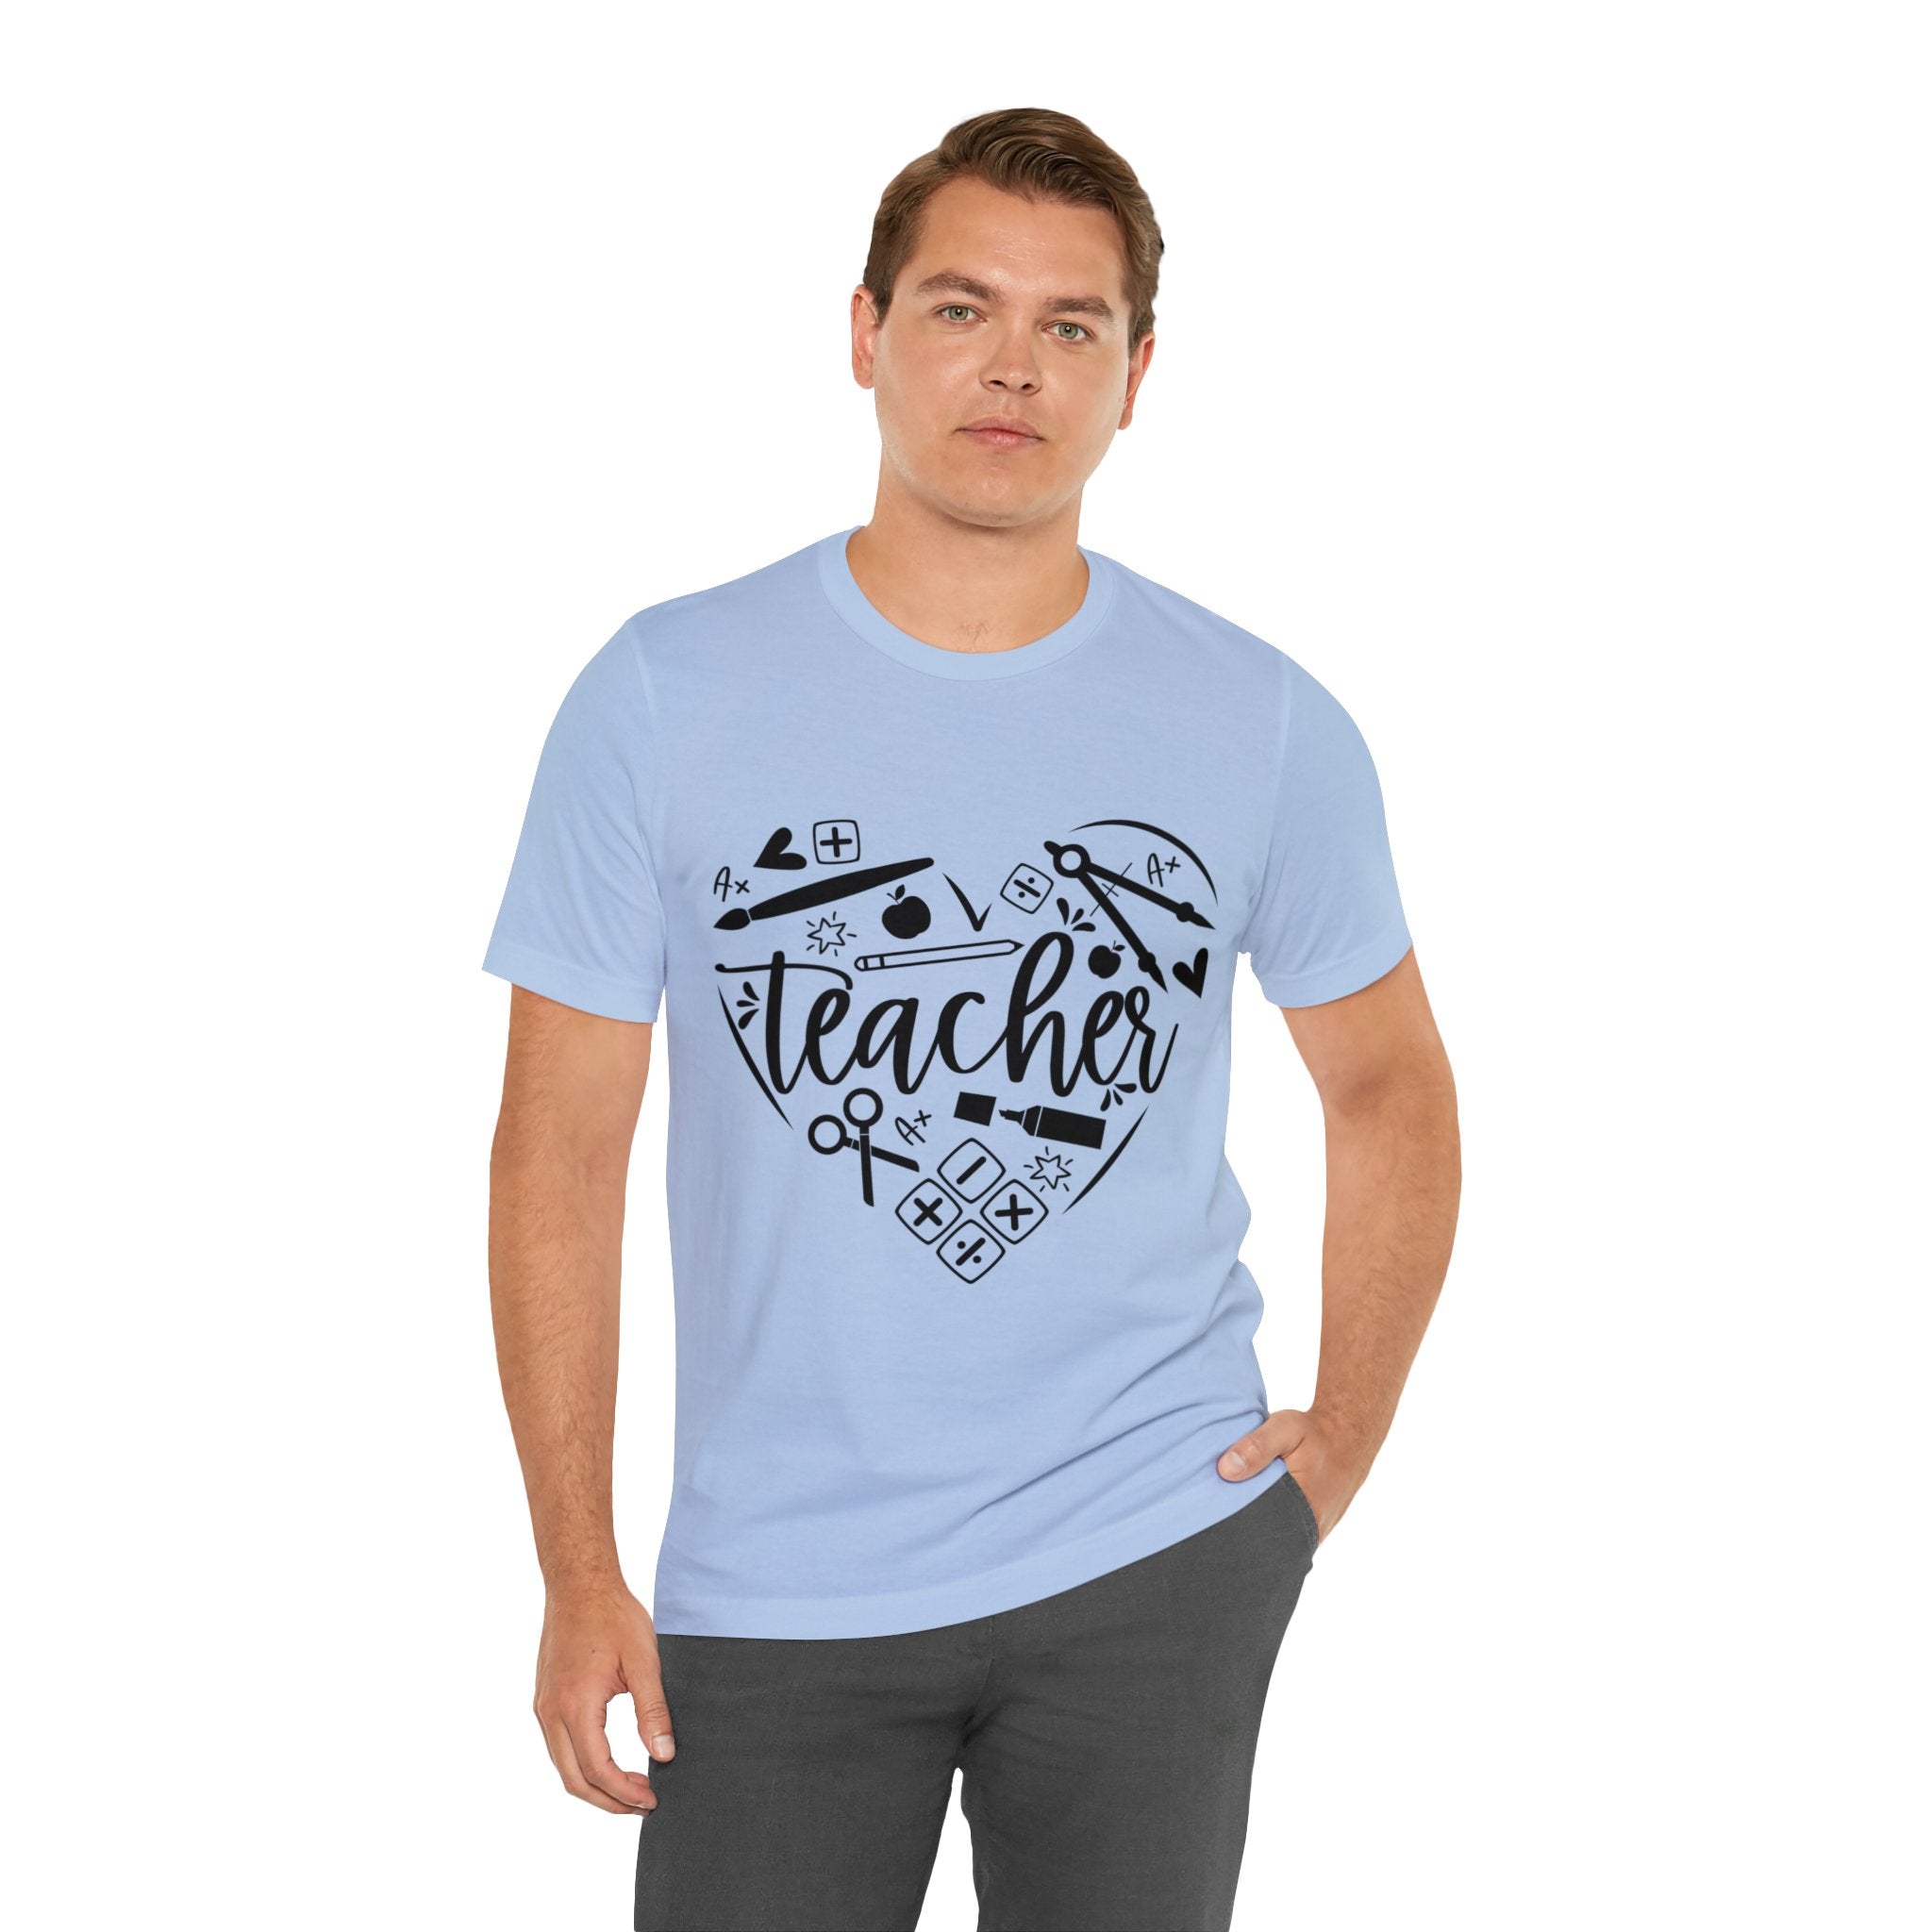 Heart of Teacher | Printed T-shirt for Teacher Men